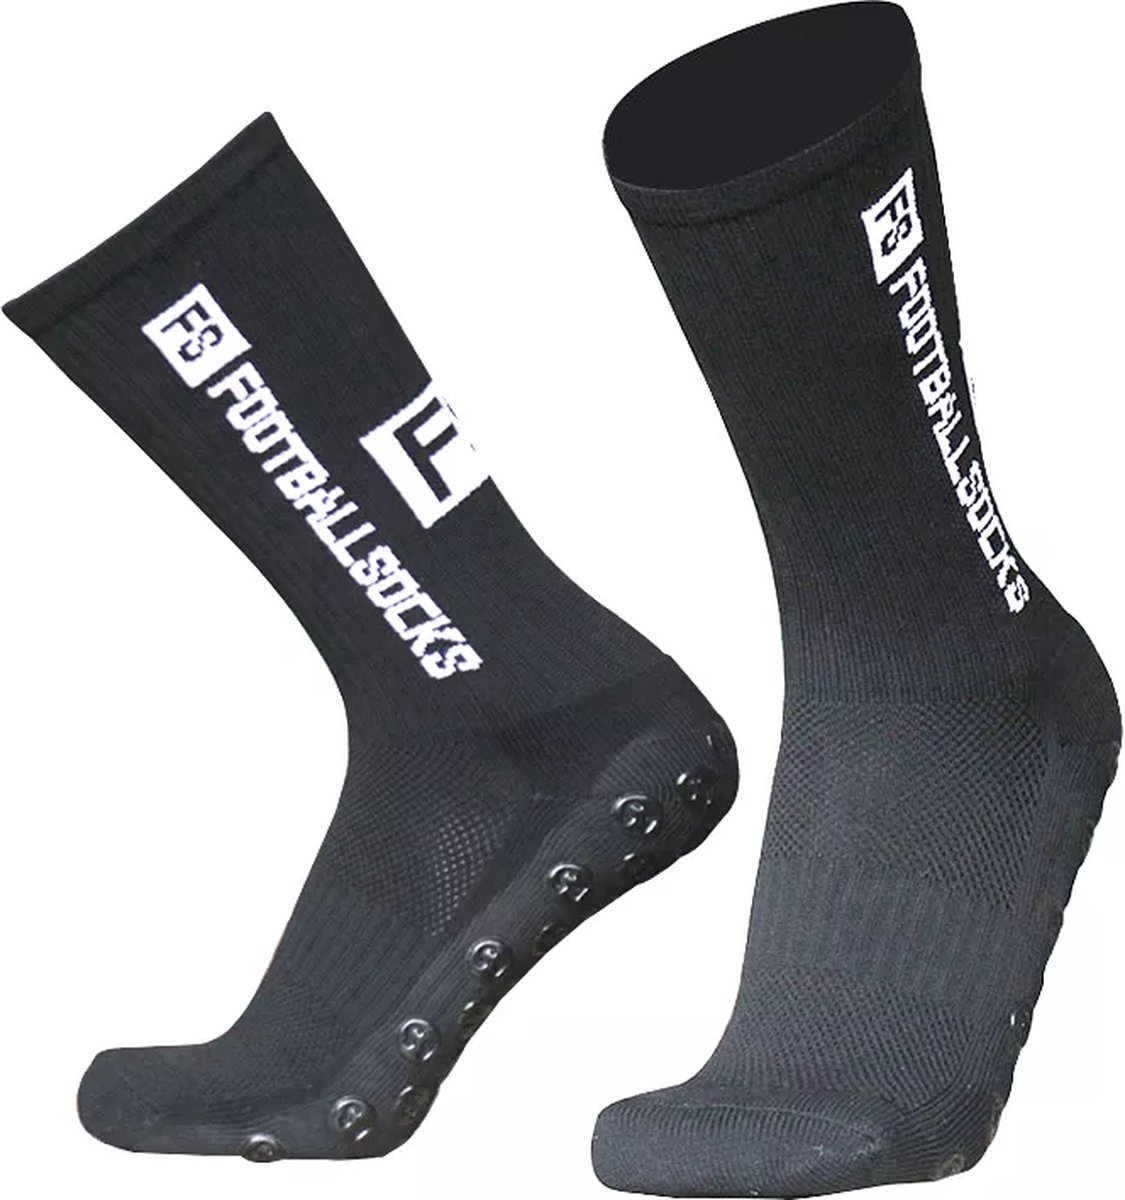 Footballsocks® Gripsokken - Gripsokken Voetbal - Grip Socks - One Size - Anti Slip - Gripsokken Zwart